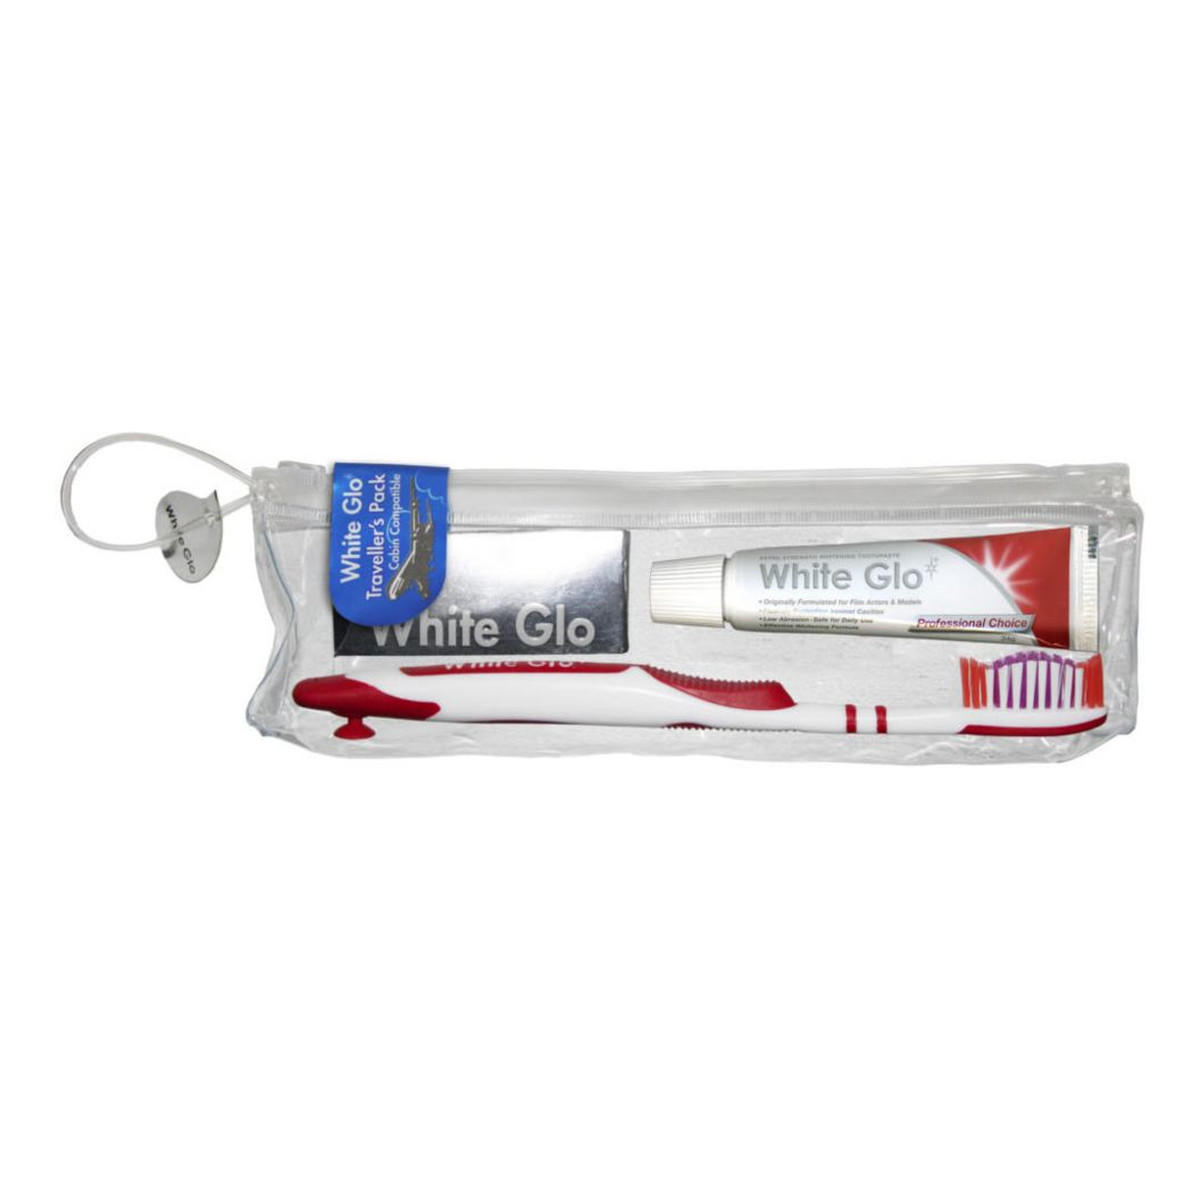 White Glo Travel Pack Zestaw podróżny wybielająca pasta do zębów 16ml + szczoteczka + wykałaczki dentystyczne